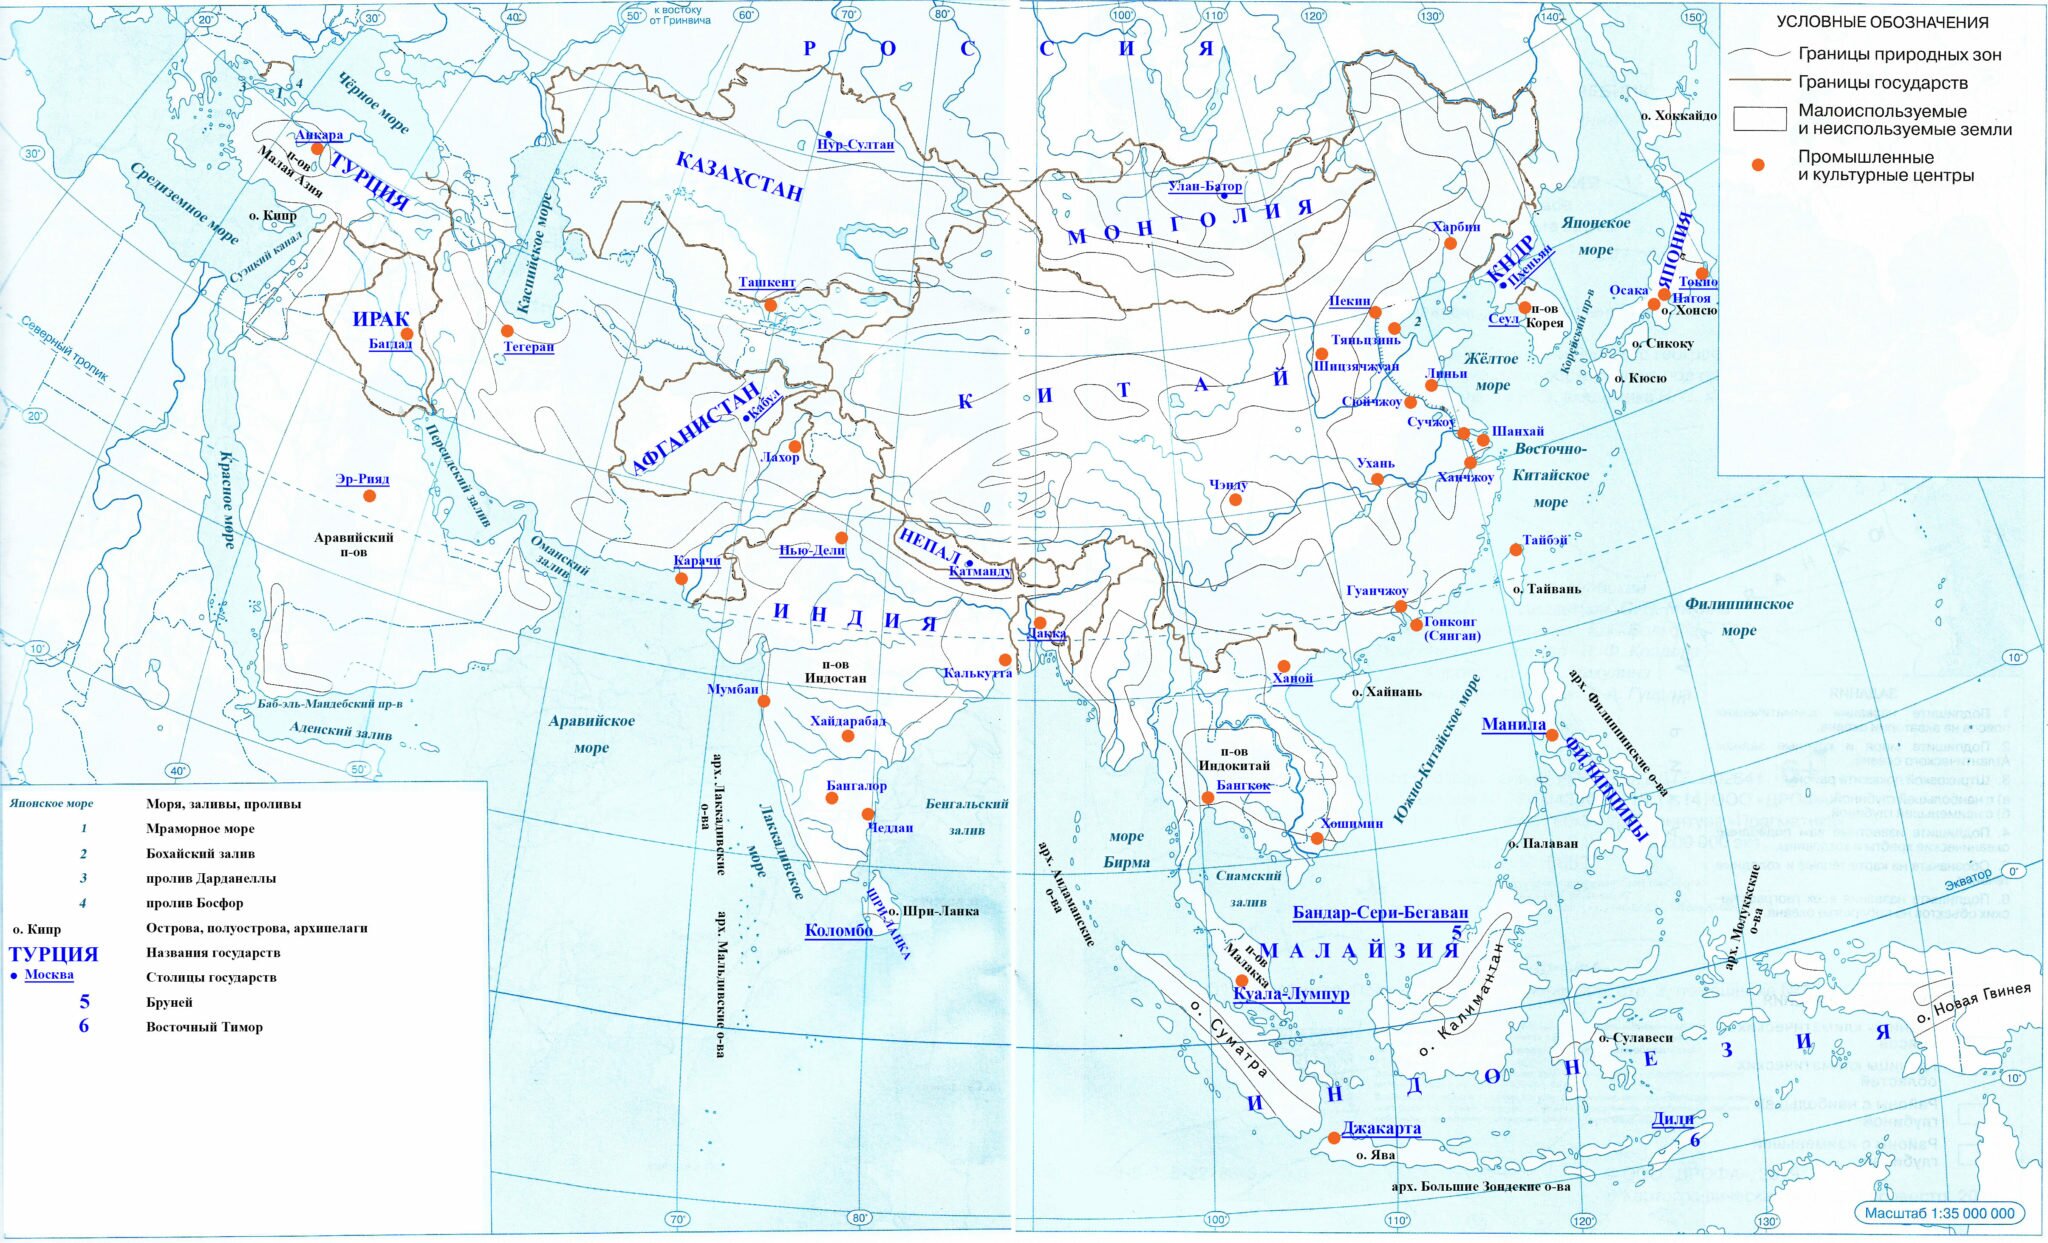 Моря, заливы, проливы Азии на контурной карте